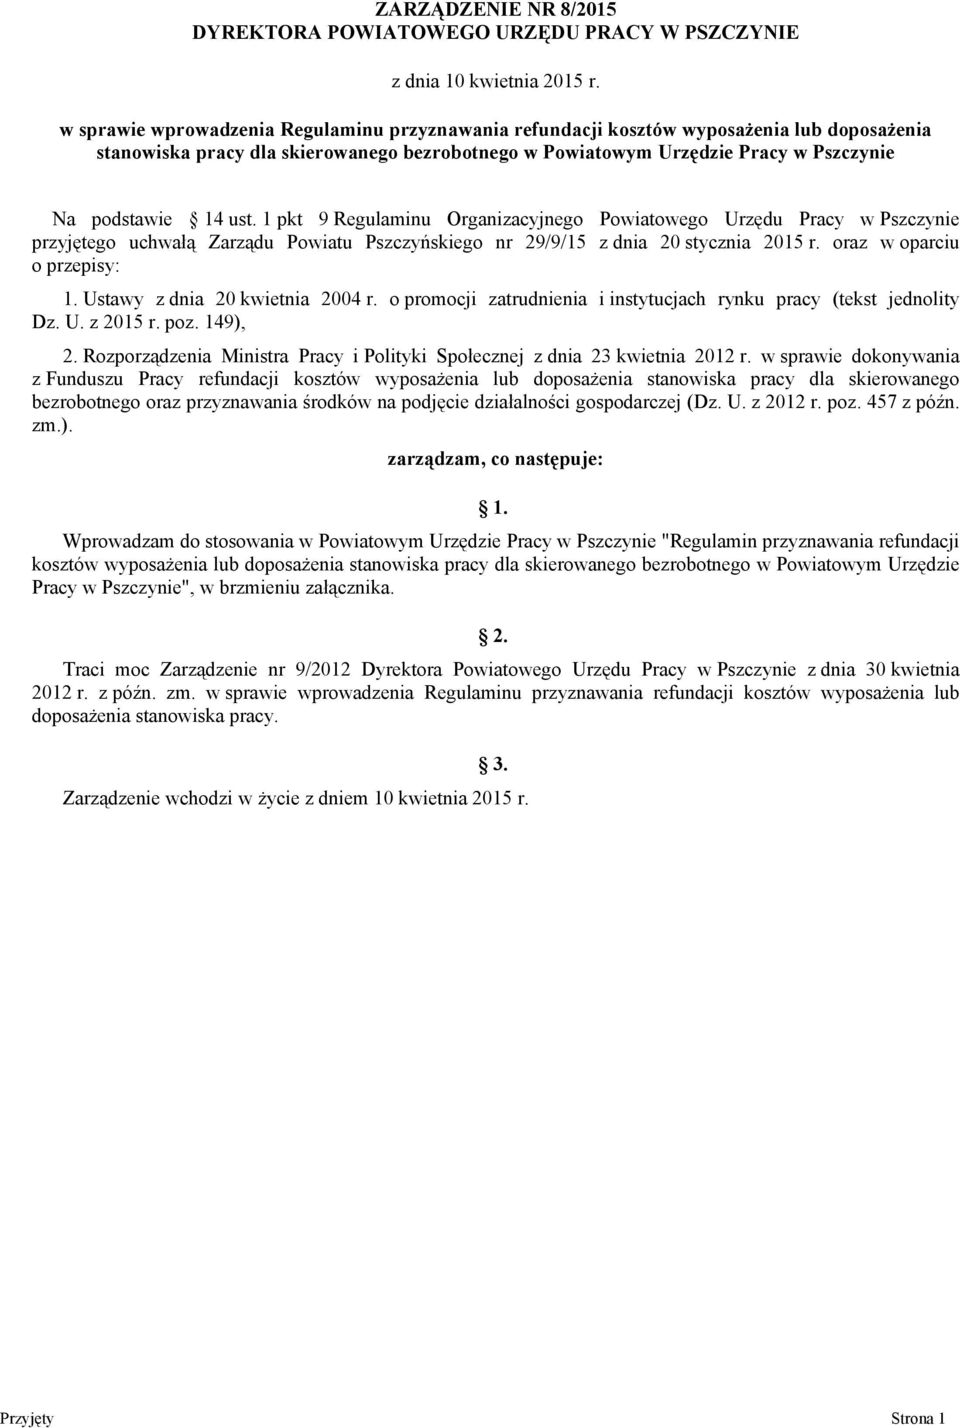 ust. 1 pkt 9 Regulaminu Organizacyjnego Powiatowego Urzędu Pracy w Pszczynie przyjętego uchwałą Zarządu Powiatu Pszczyńskiego nr 29/9/15 z dnia 20 stycznia 2015 r. oraz w oparciu o przepisy: 1.